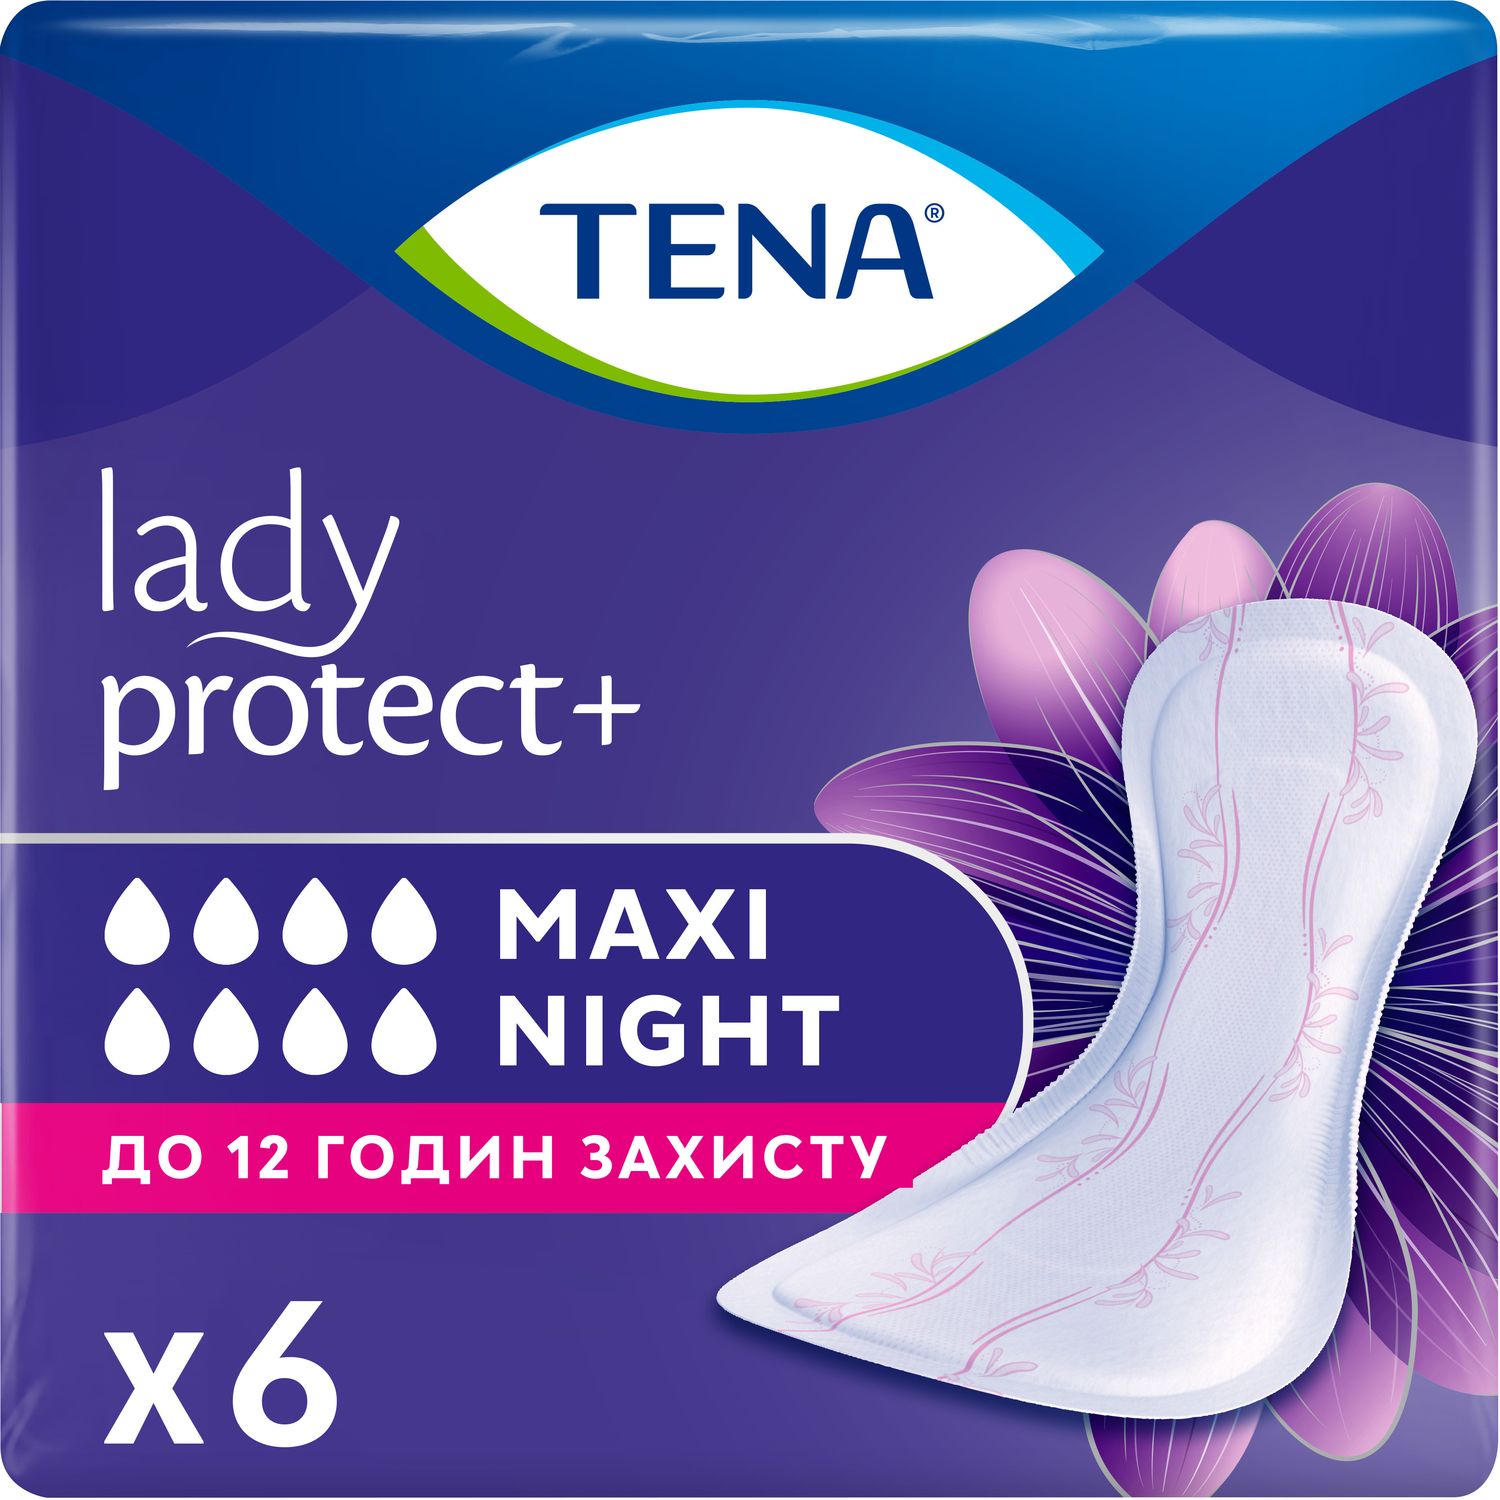 Ночные урологические прокладки Tena Lady Protect Maxi Night 8 капель 6 шт. - фото 1